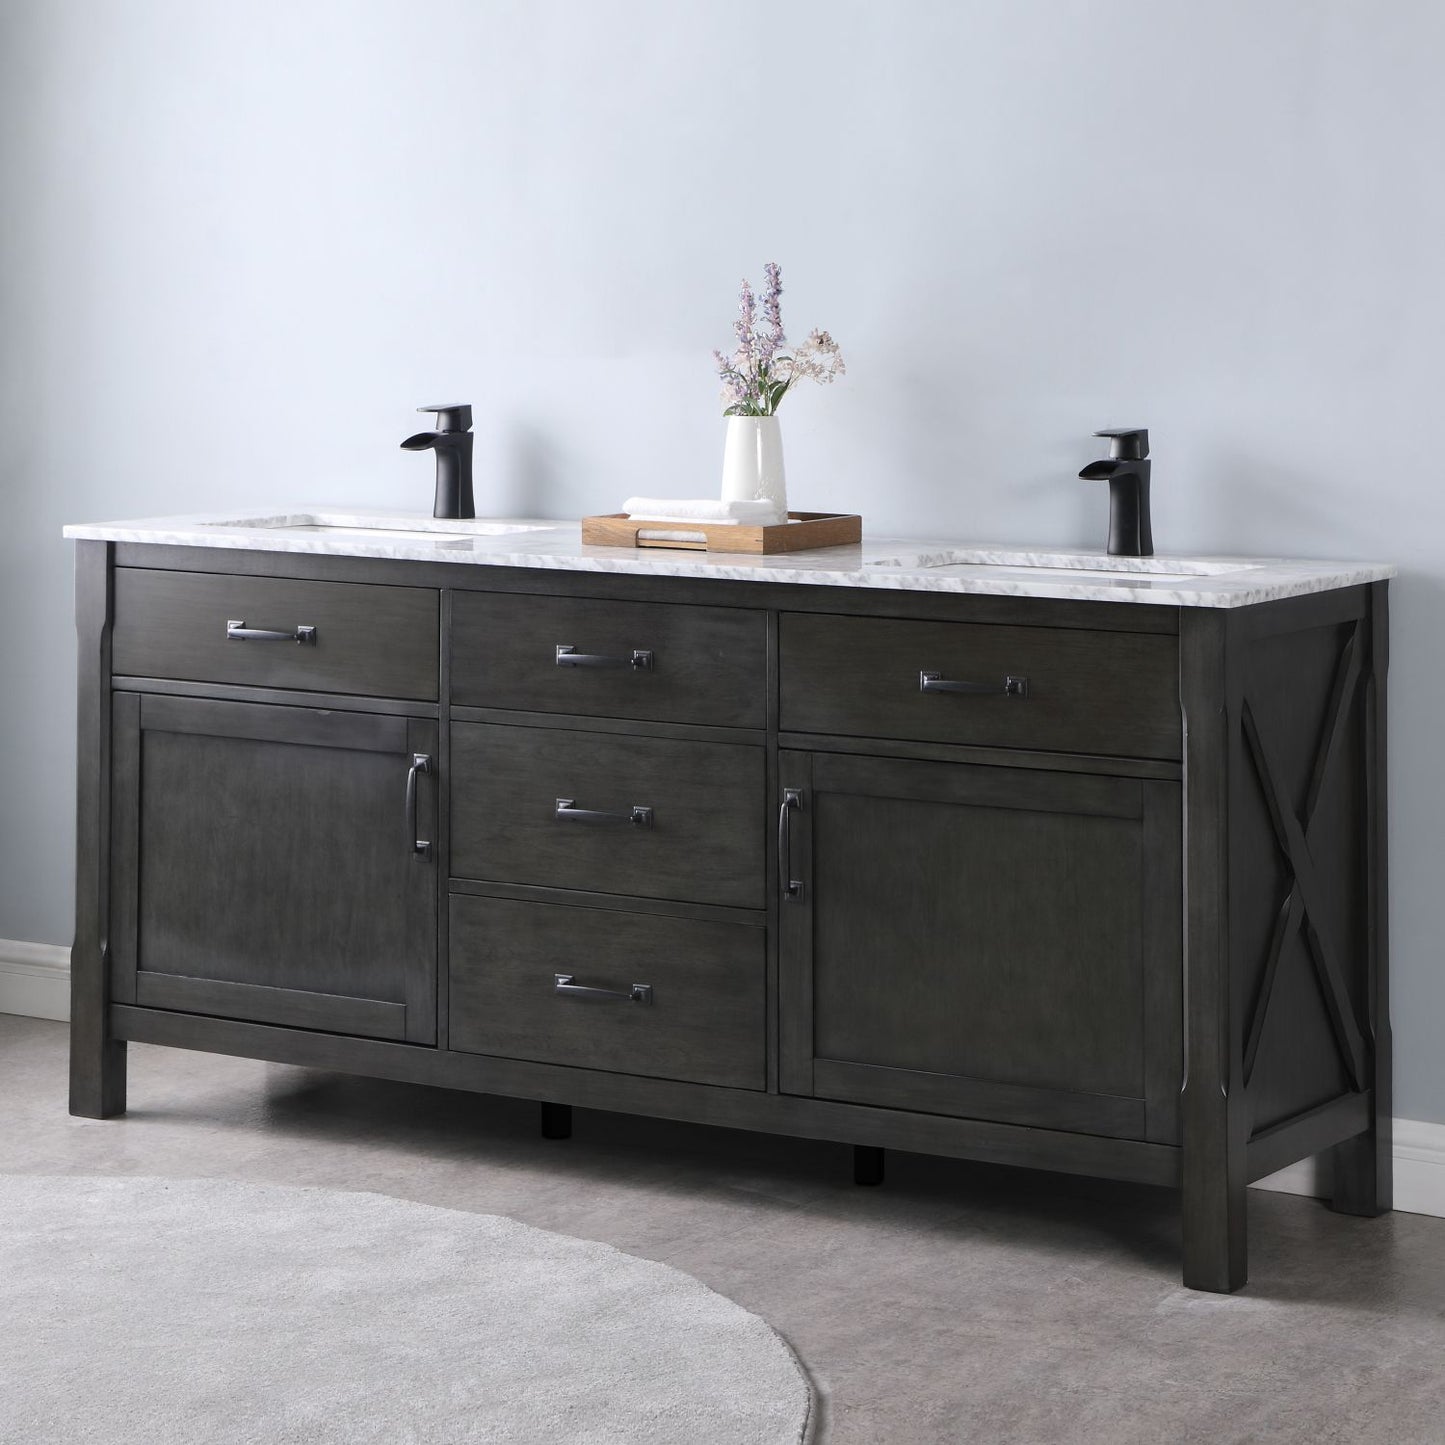 Altair Maribella 72" Double Bathroom Vanity Set Countertop without Mirror - Luxe Bathroom Vanities